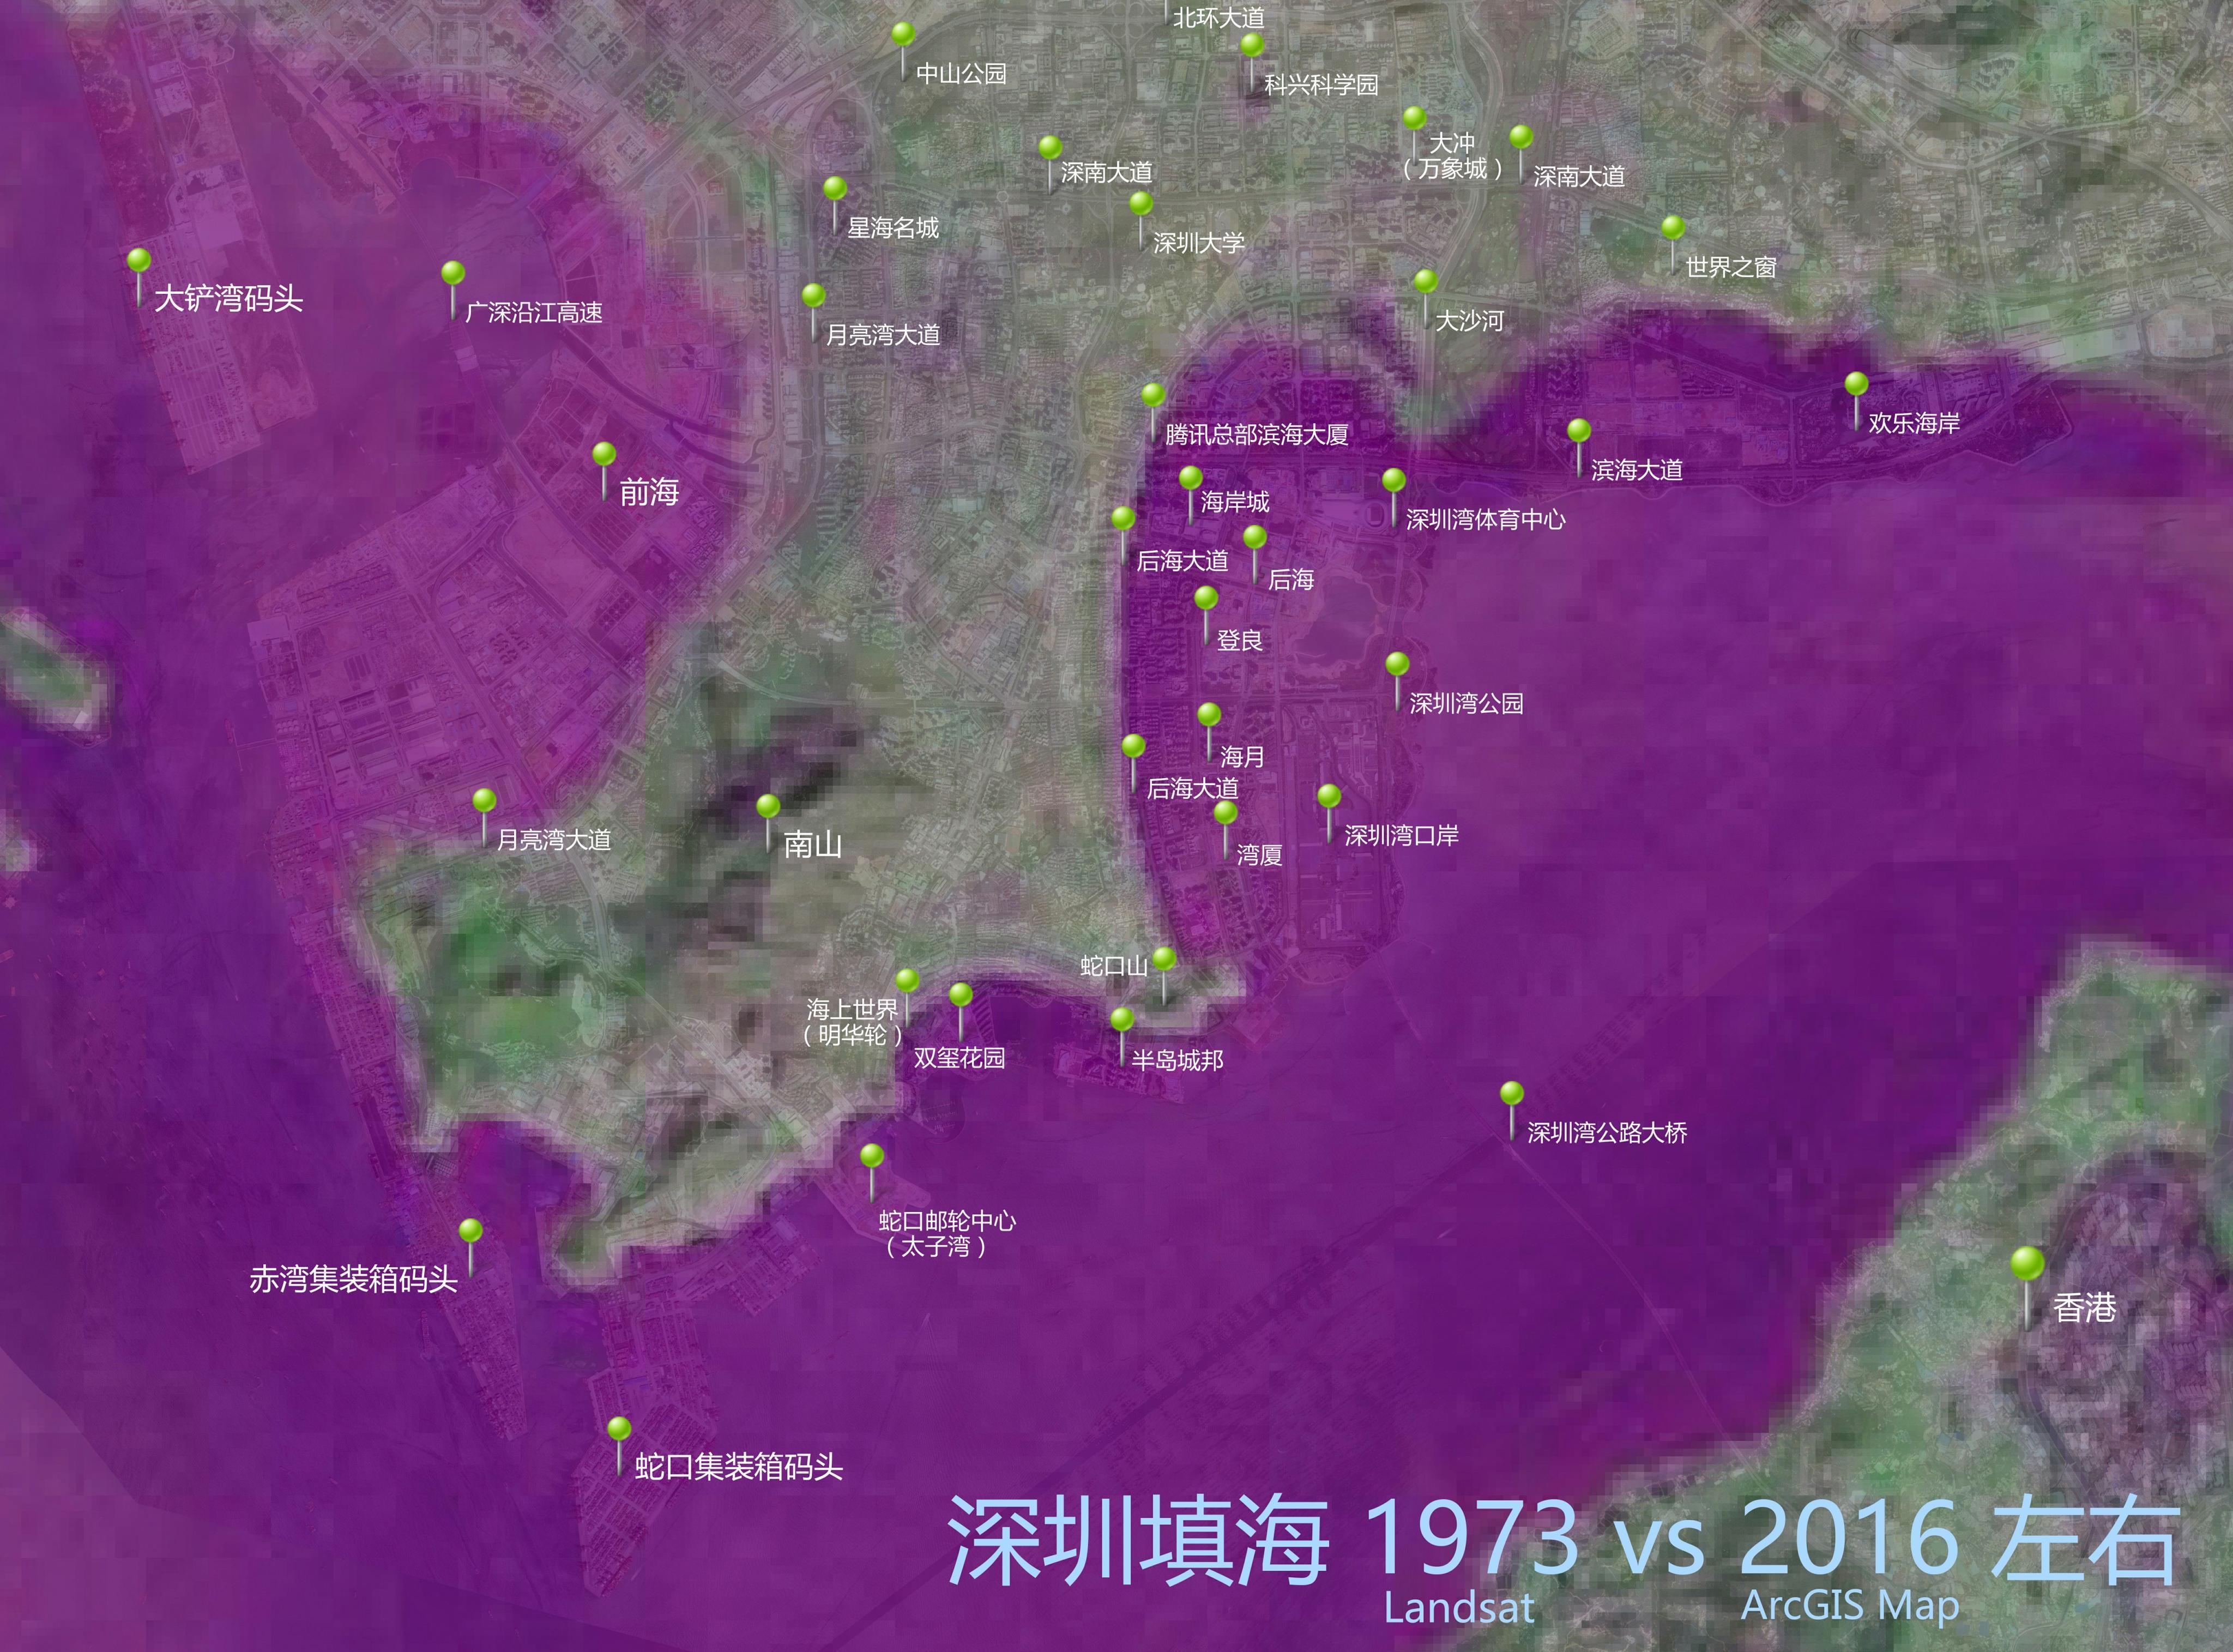 你可能不知的深圳填海 1973-2016 卫星图对比 - 知乎-image